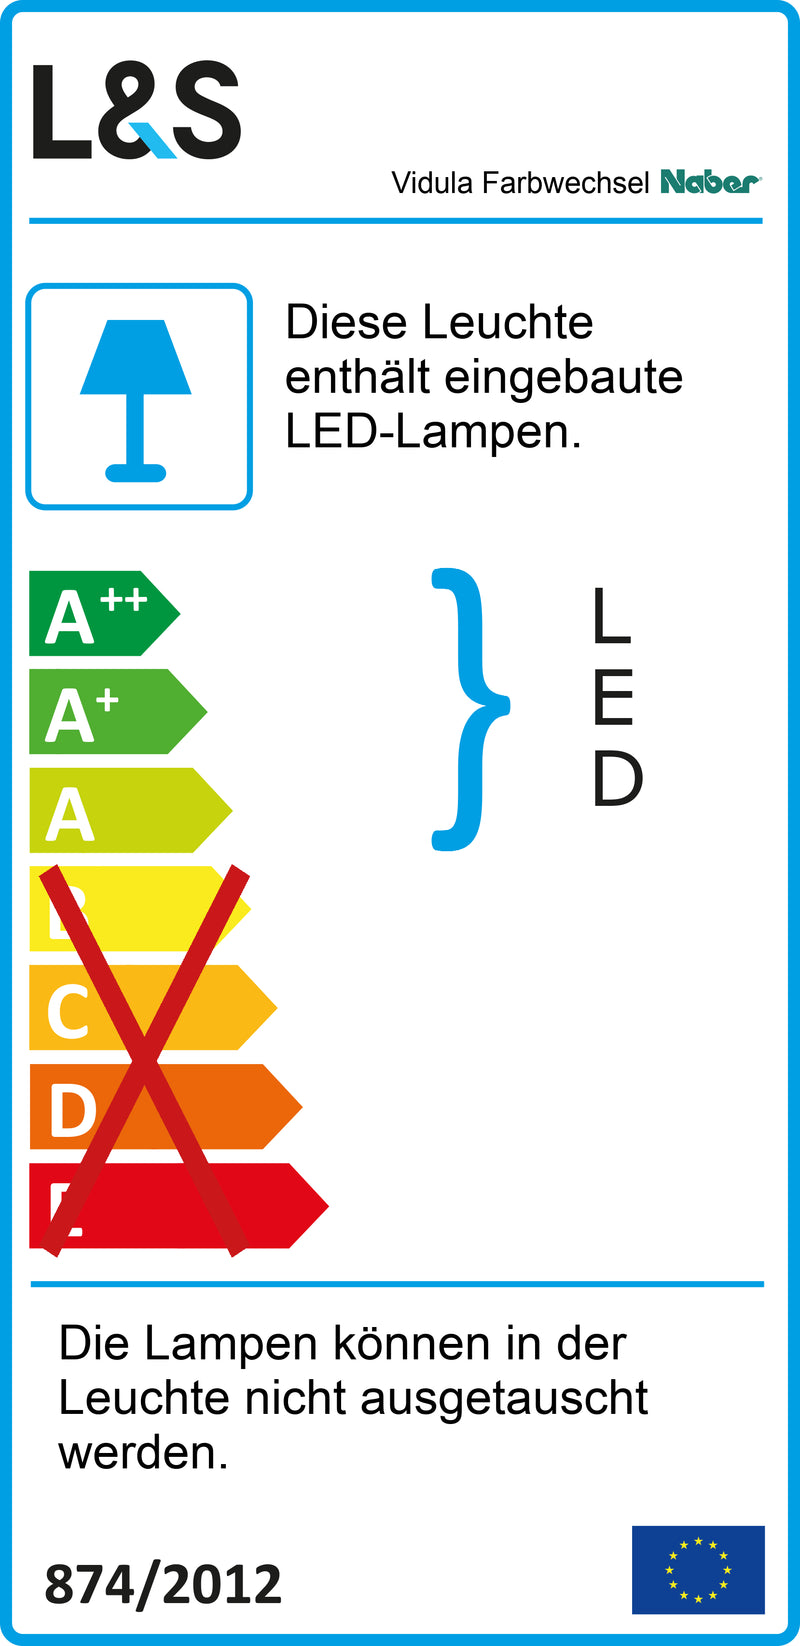 E-Label zu Zeichnung zu Vidula Farbwechsel LED als Variante L 2600 mm, schwarz matt von Naber GmbH in der Kategorie Lichttechnik in Österreich auf conceptshop.at